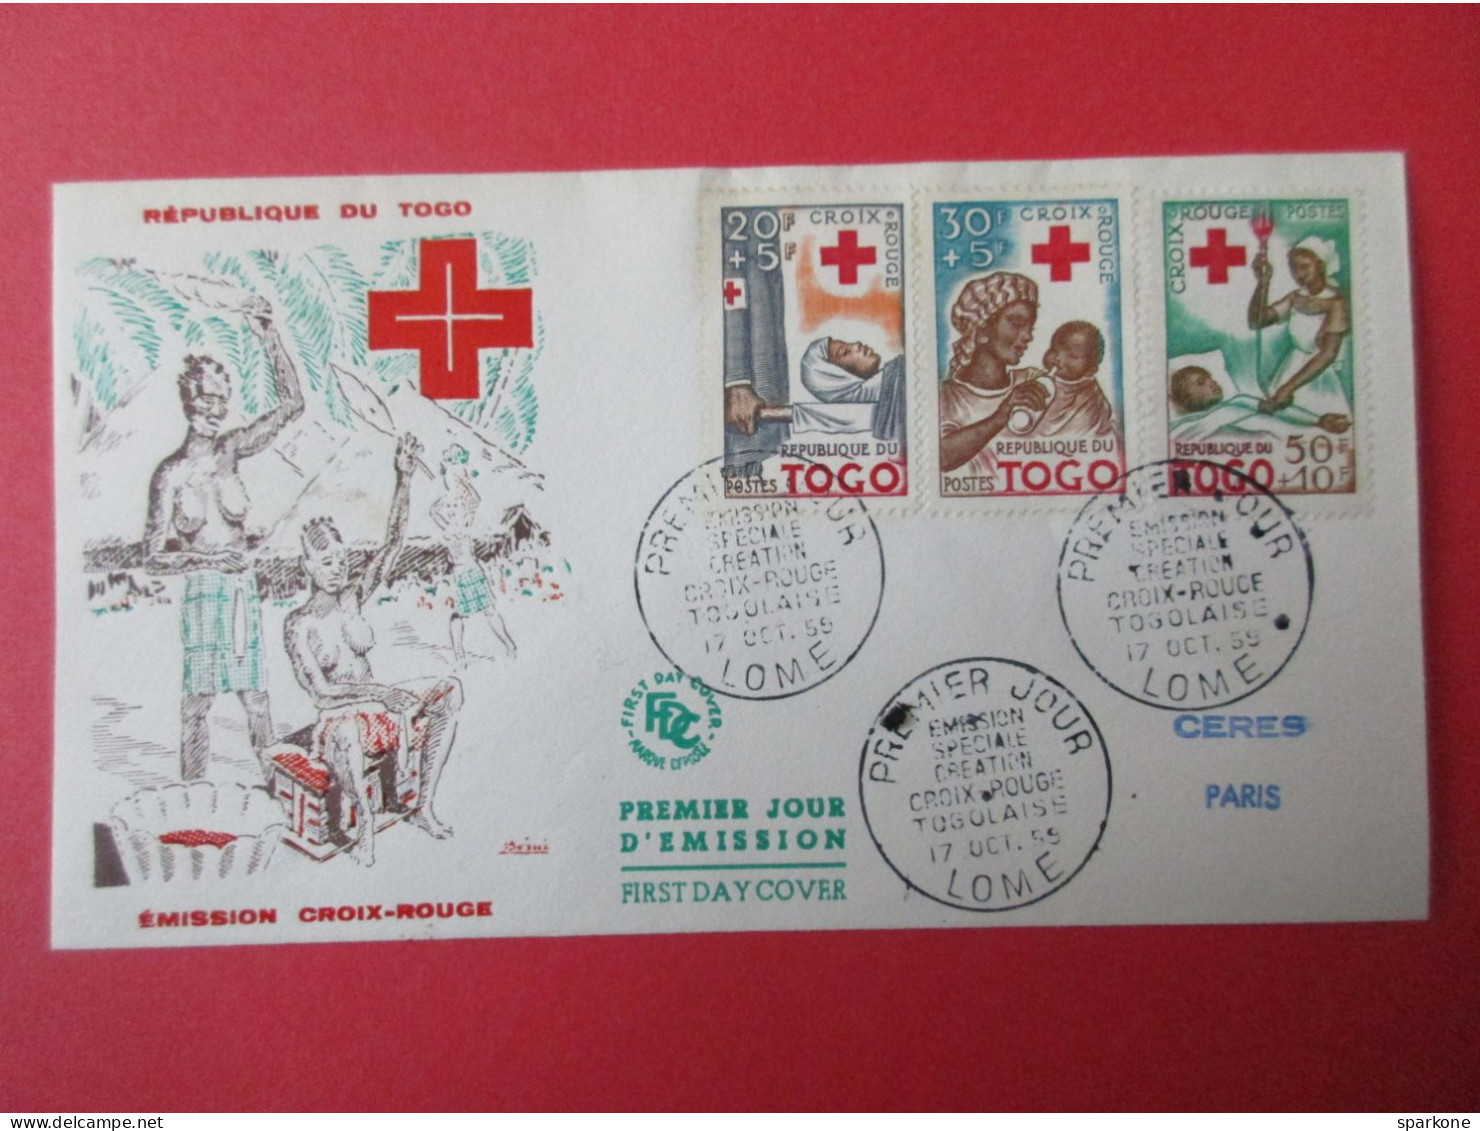 Marcophilie - Enveloppe - République Du Togo - Emission Croix-Rouge - 1° Jour 1955 - Briefe U. Dokumente